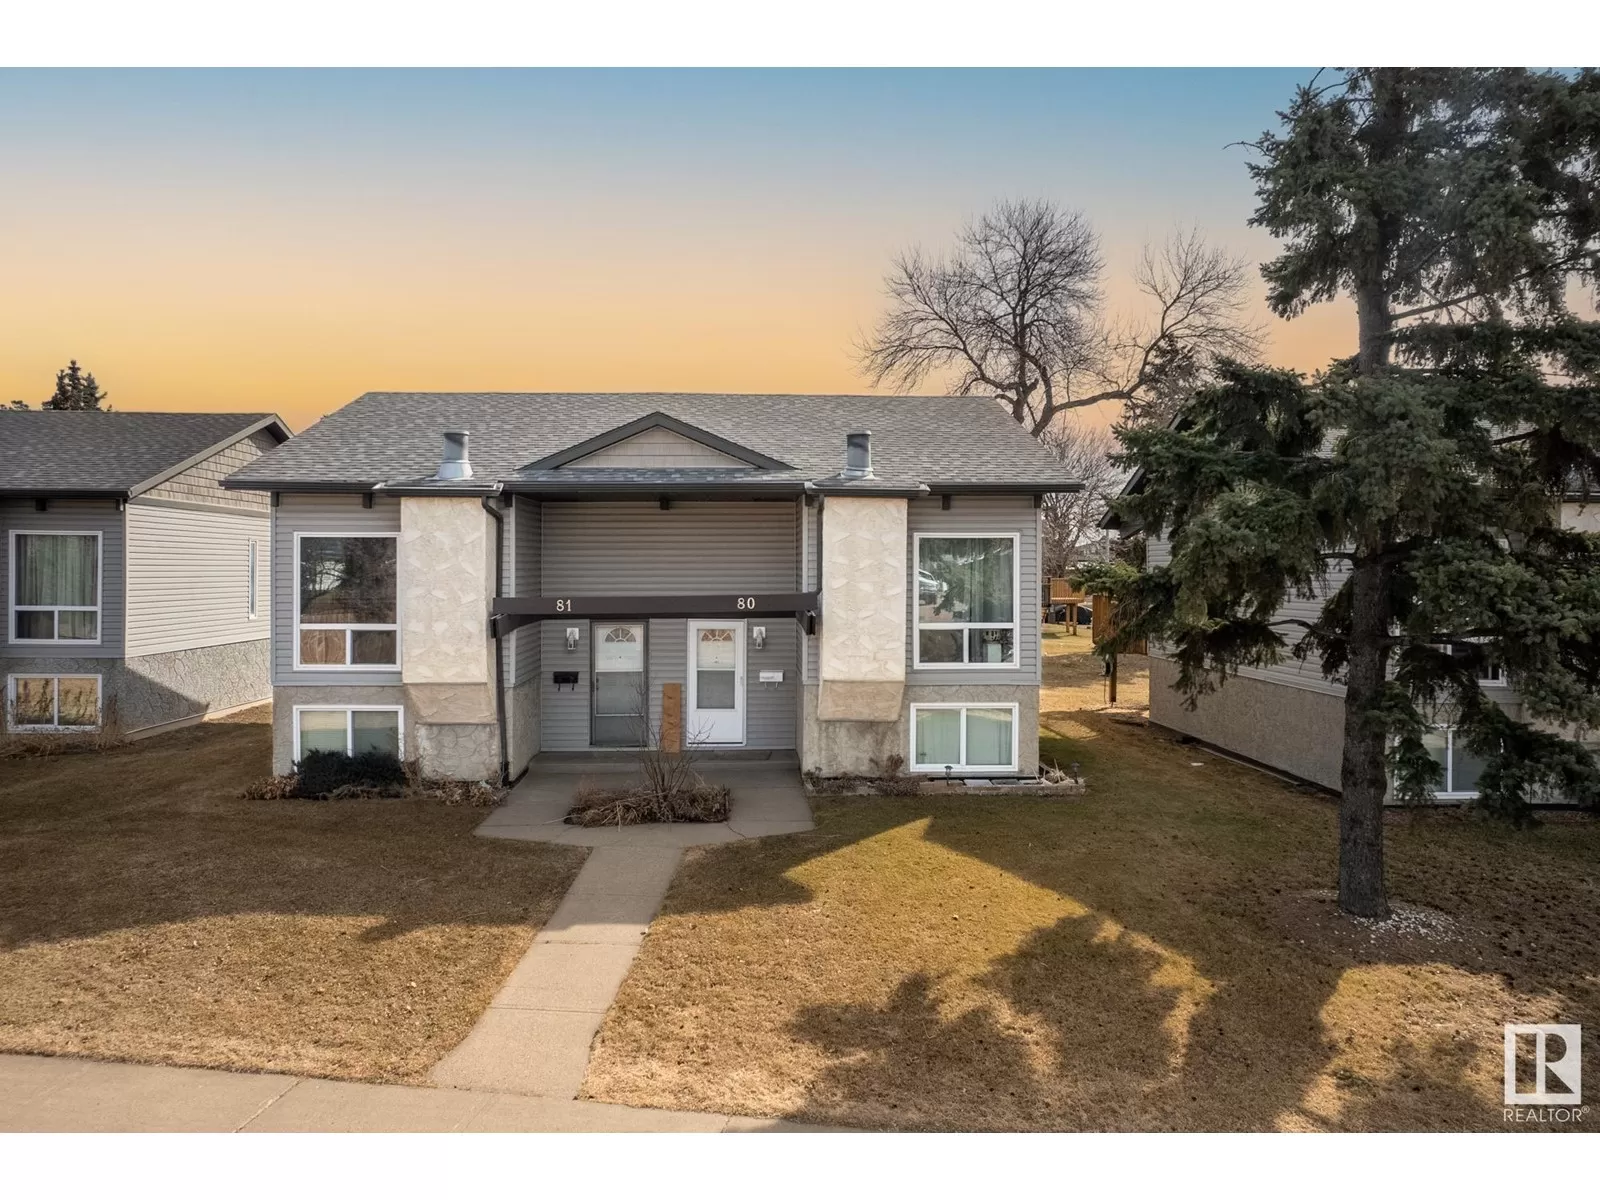 Duplex for rent: #80 11440 152b Av Nw, Edmonton, Alberta T5X 1E8